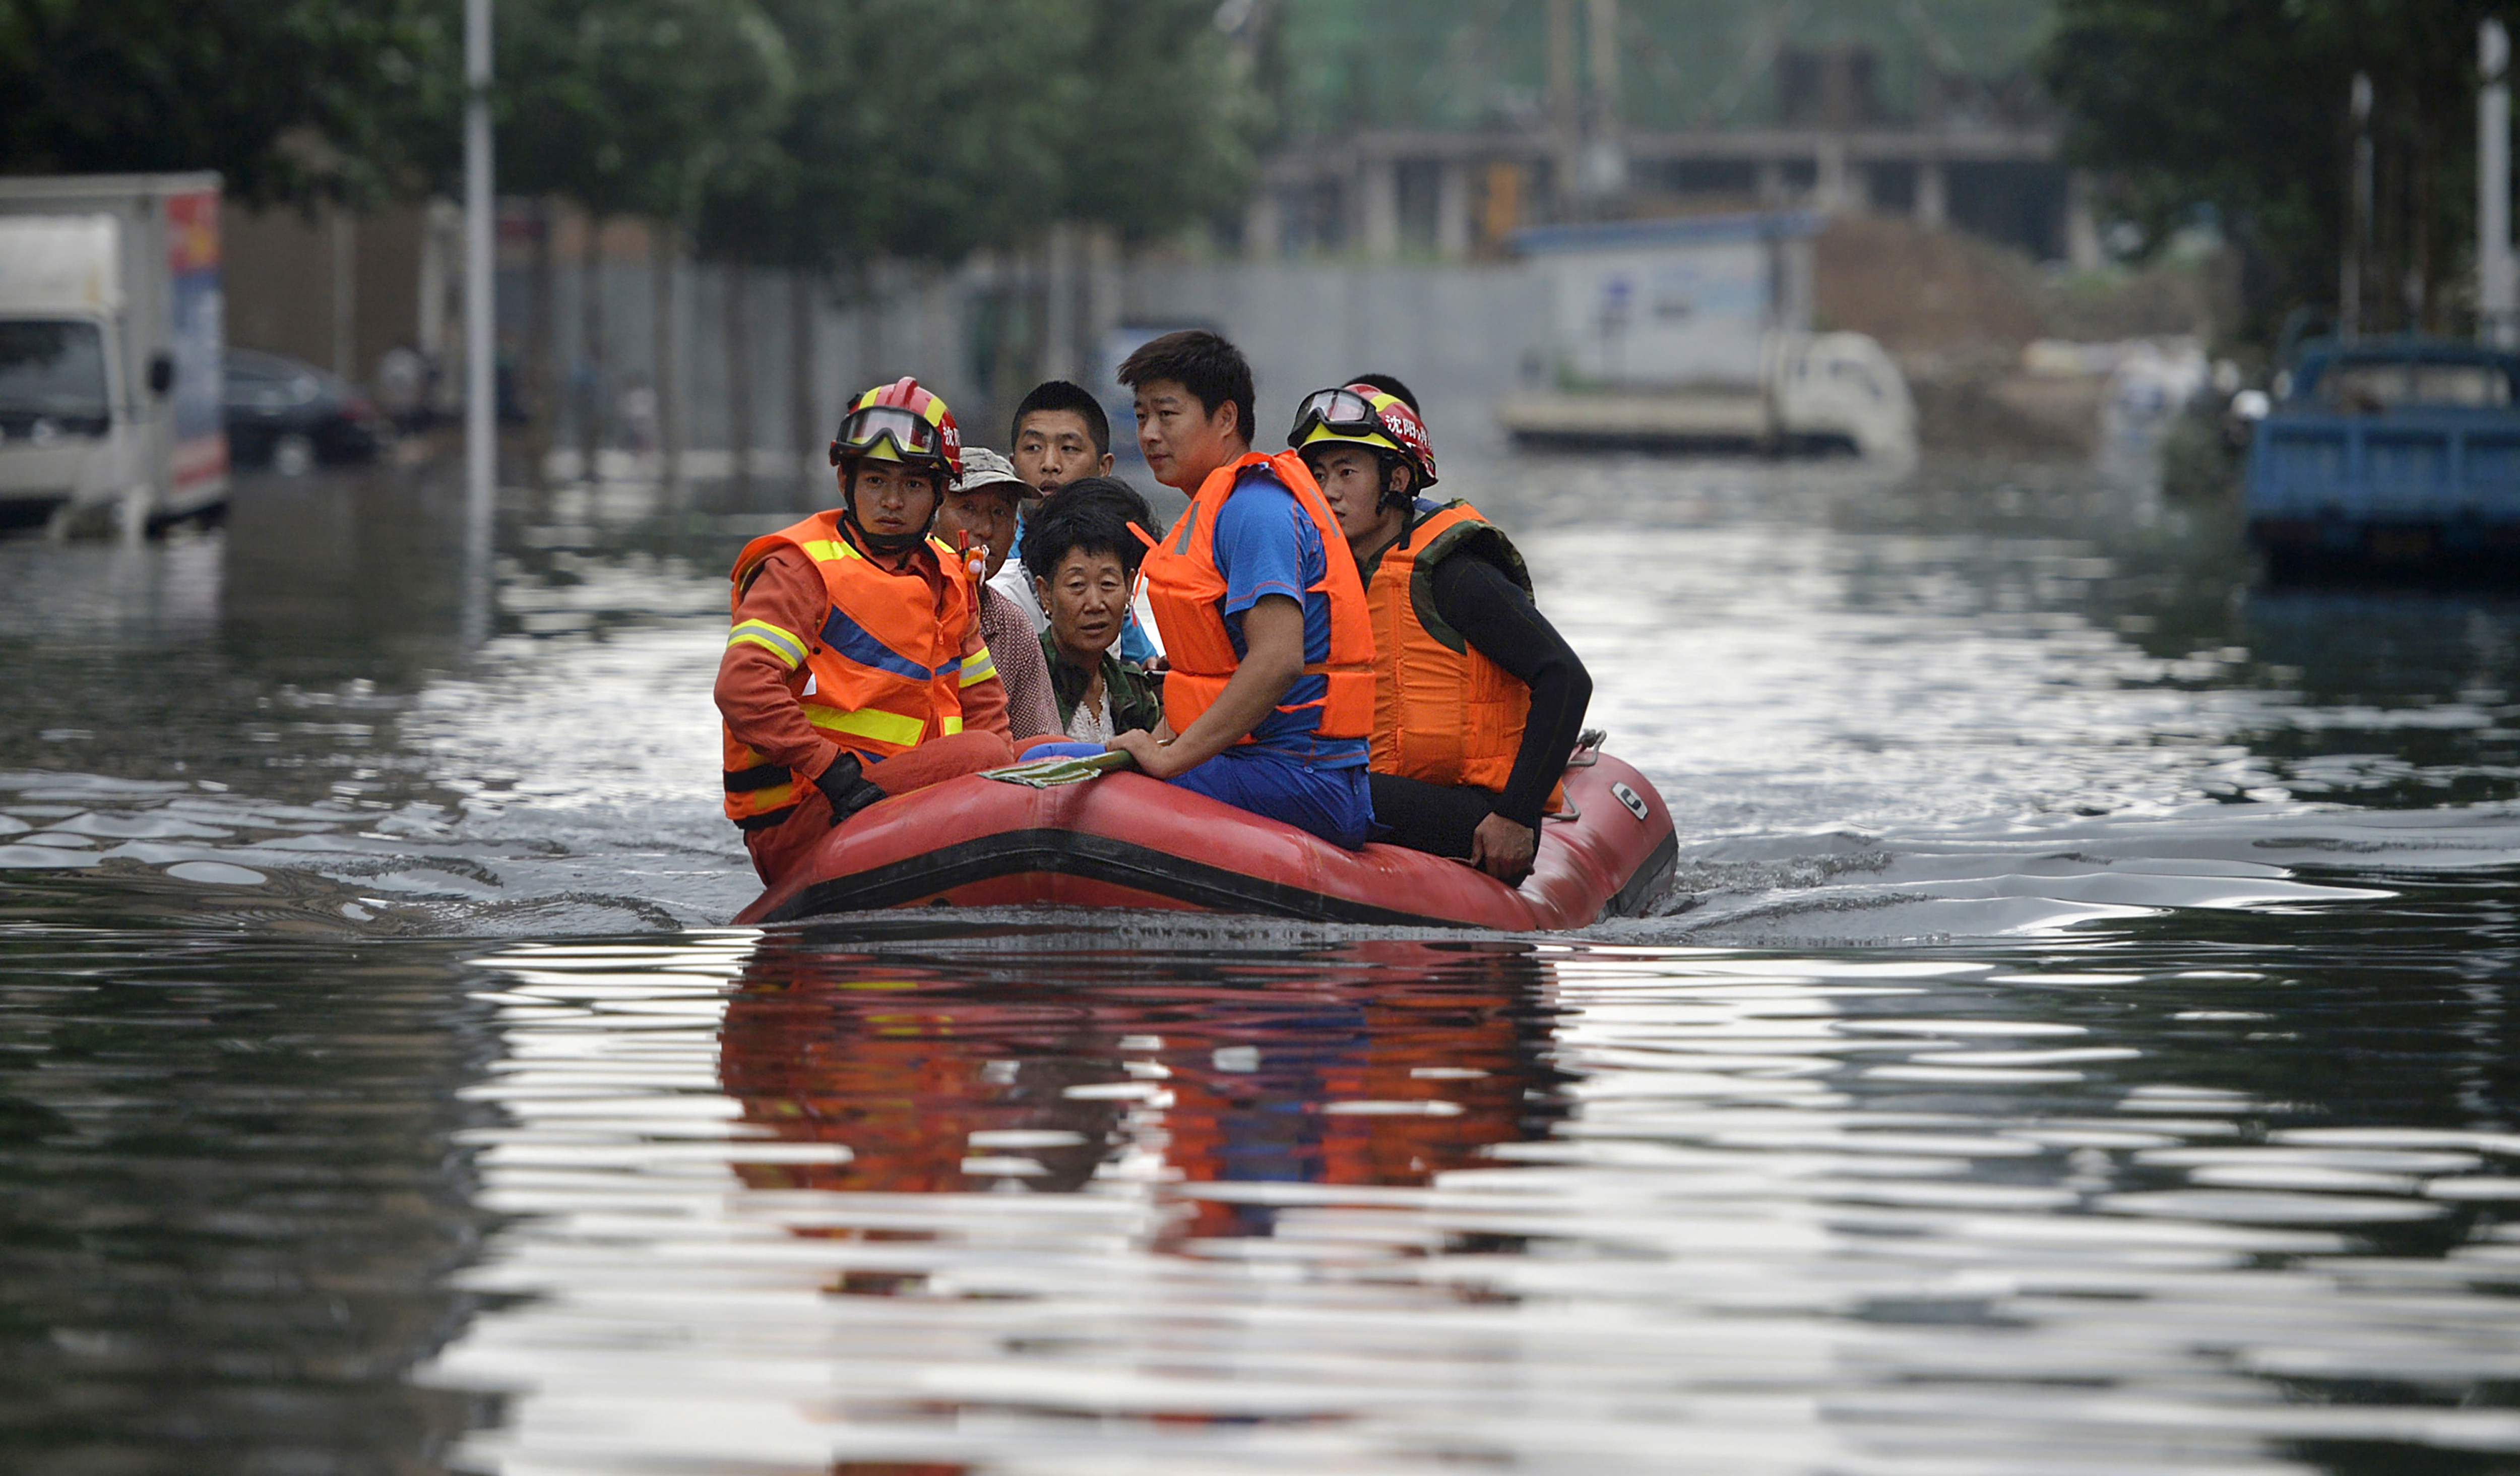 Cancelan clases y transporte público en sur de China por tifón